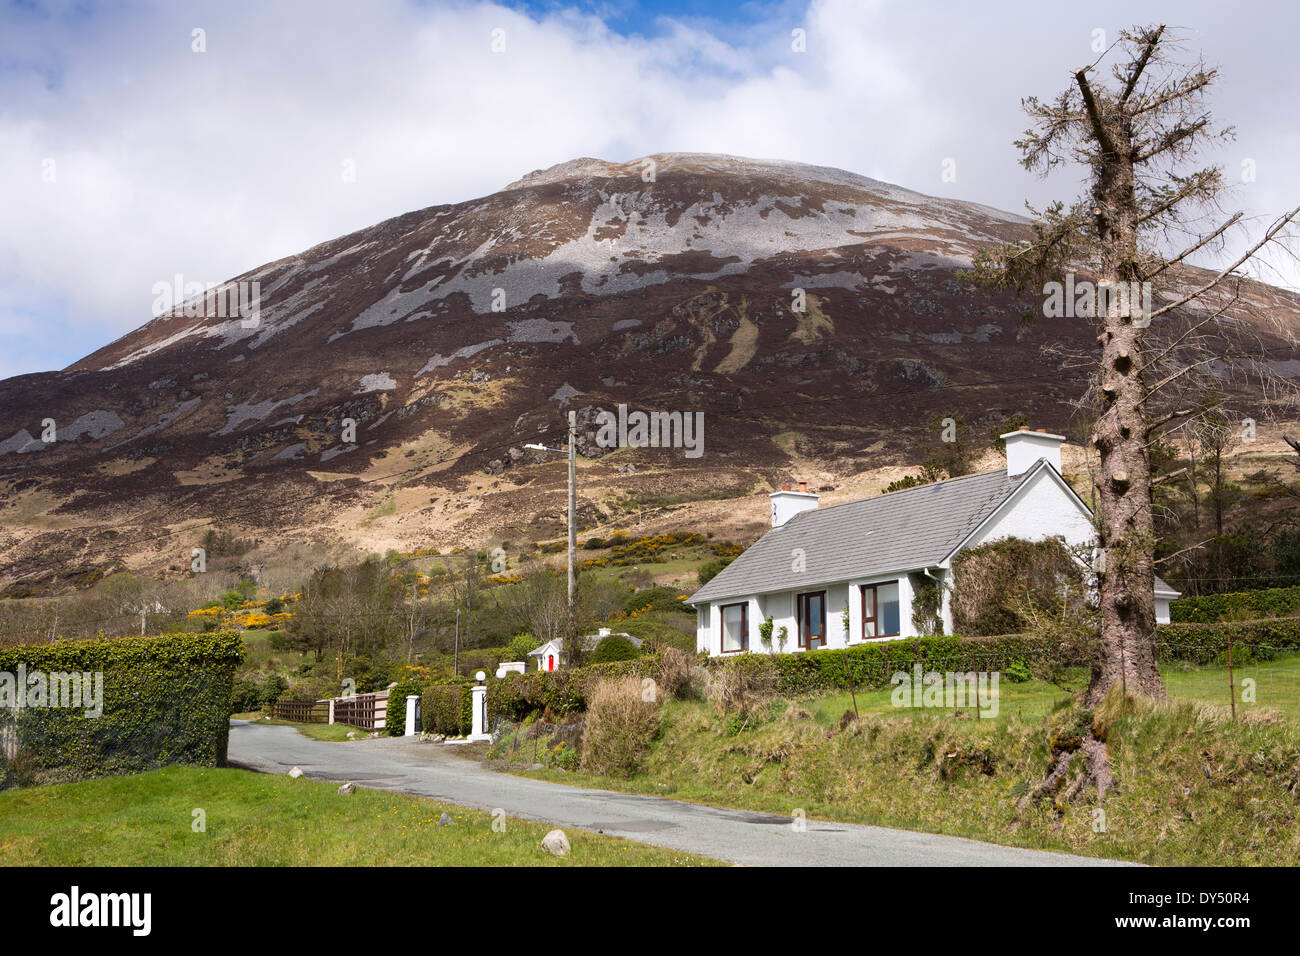 L'Irlande, Co Donegal, Dunlewey, cottage Mount Errigal ci-dessous, la deuxième plus haute montagne d'Irlande Banque D'Images